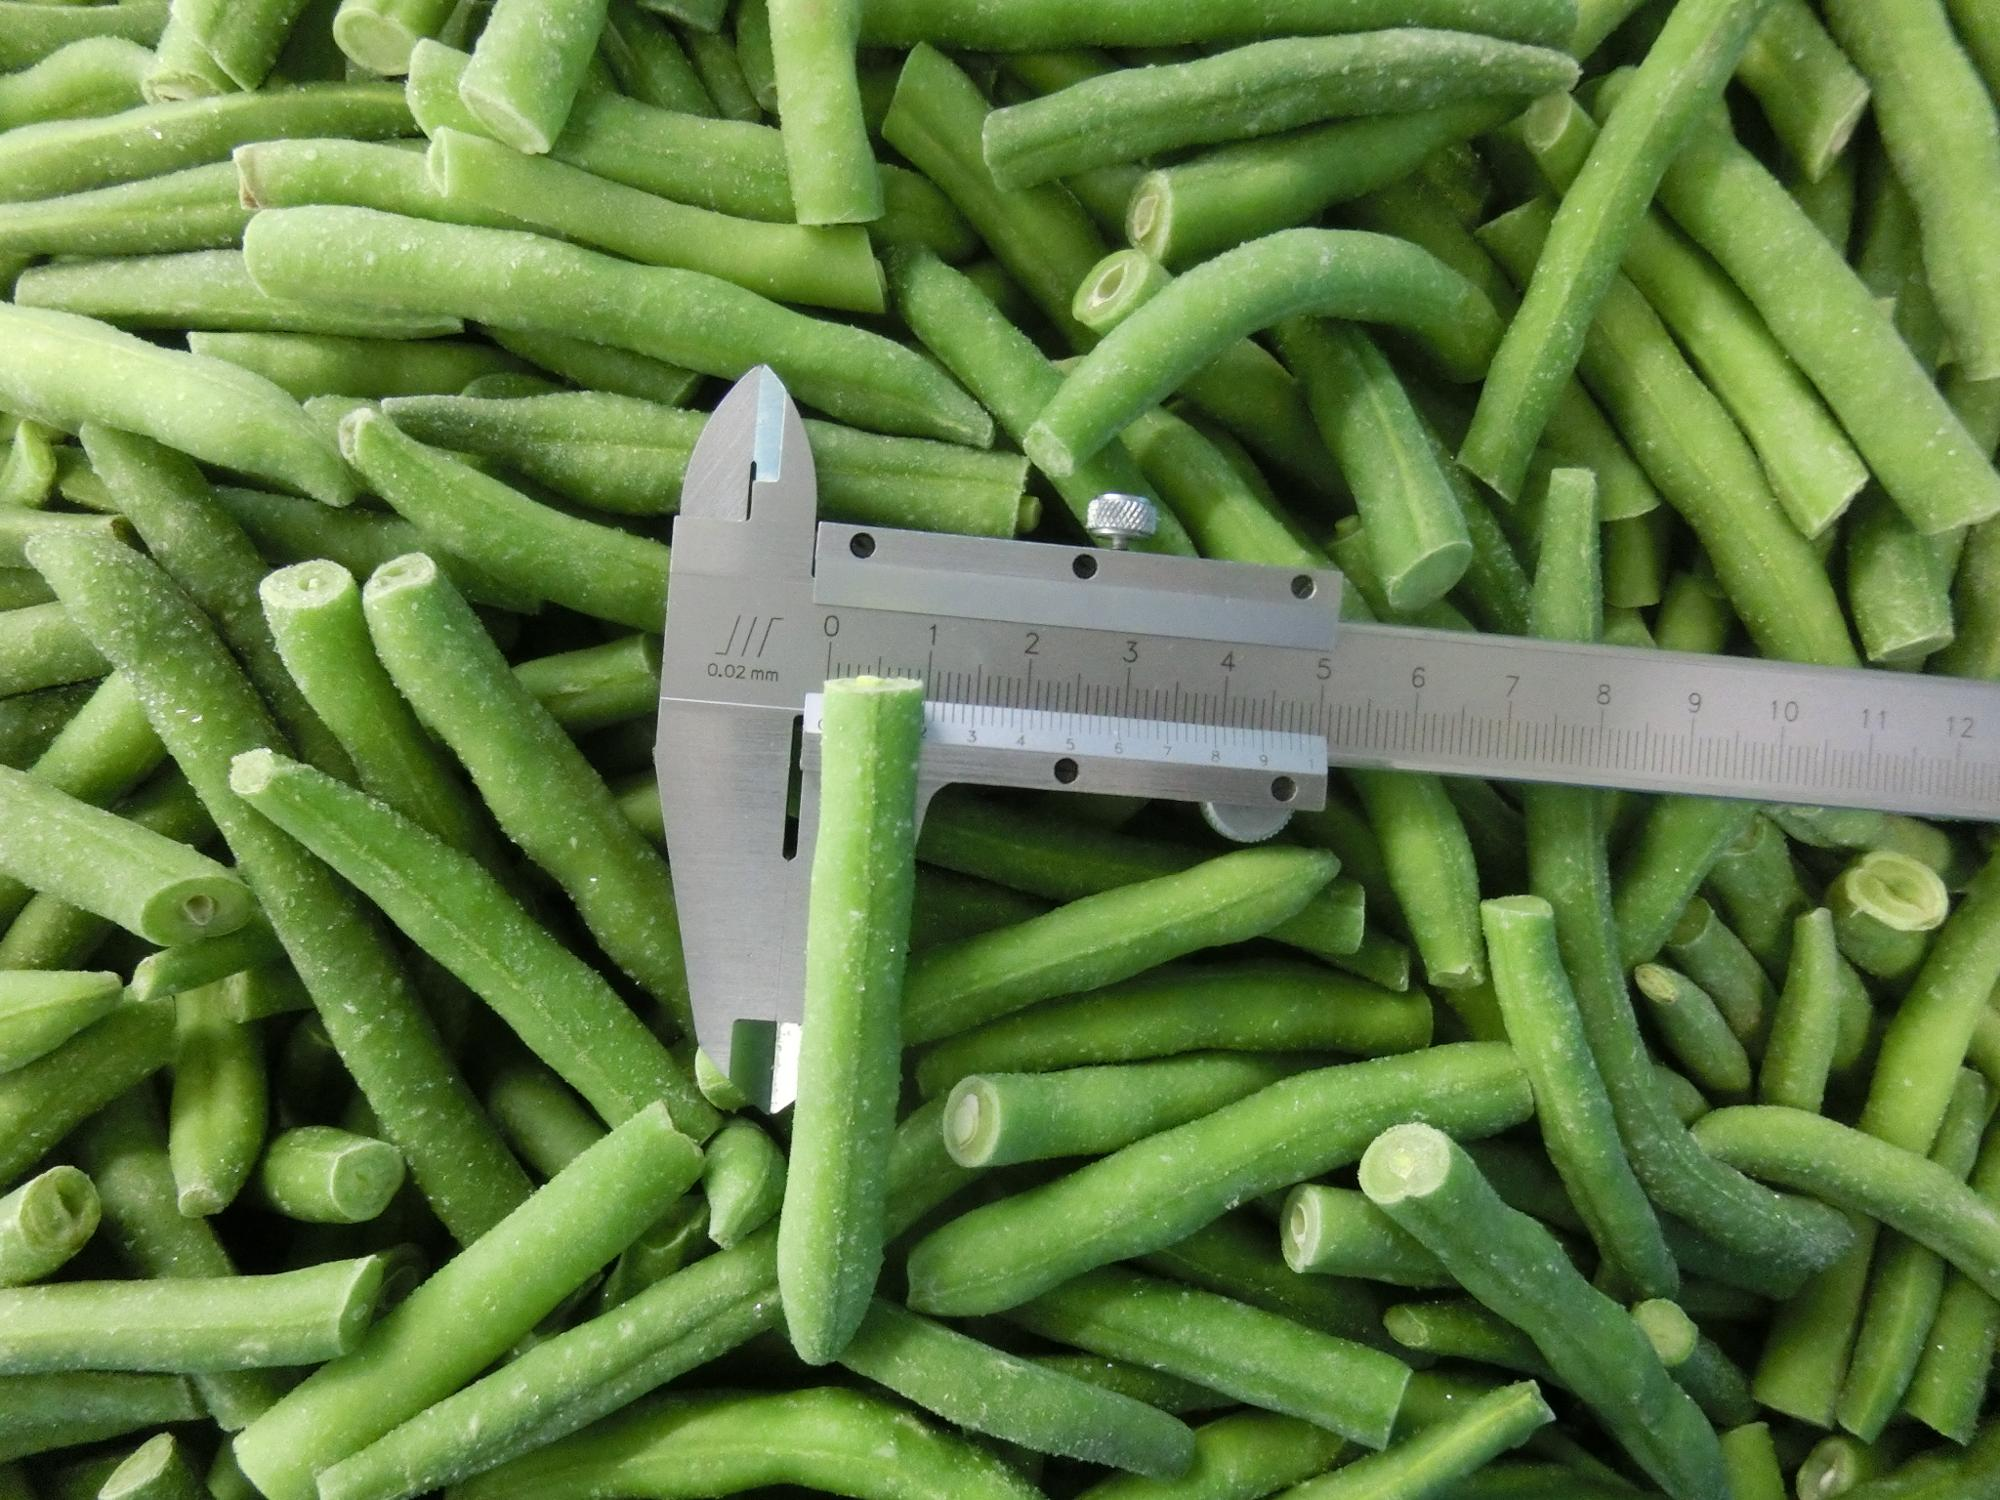 Frozen Organic Green Bean